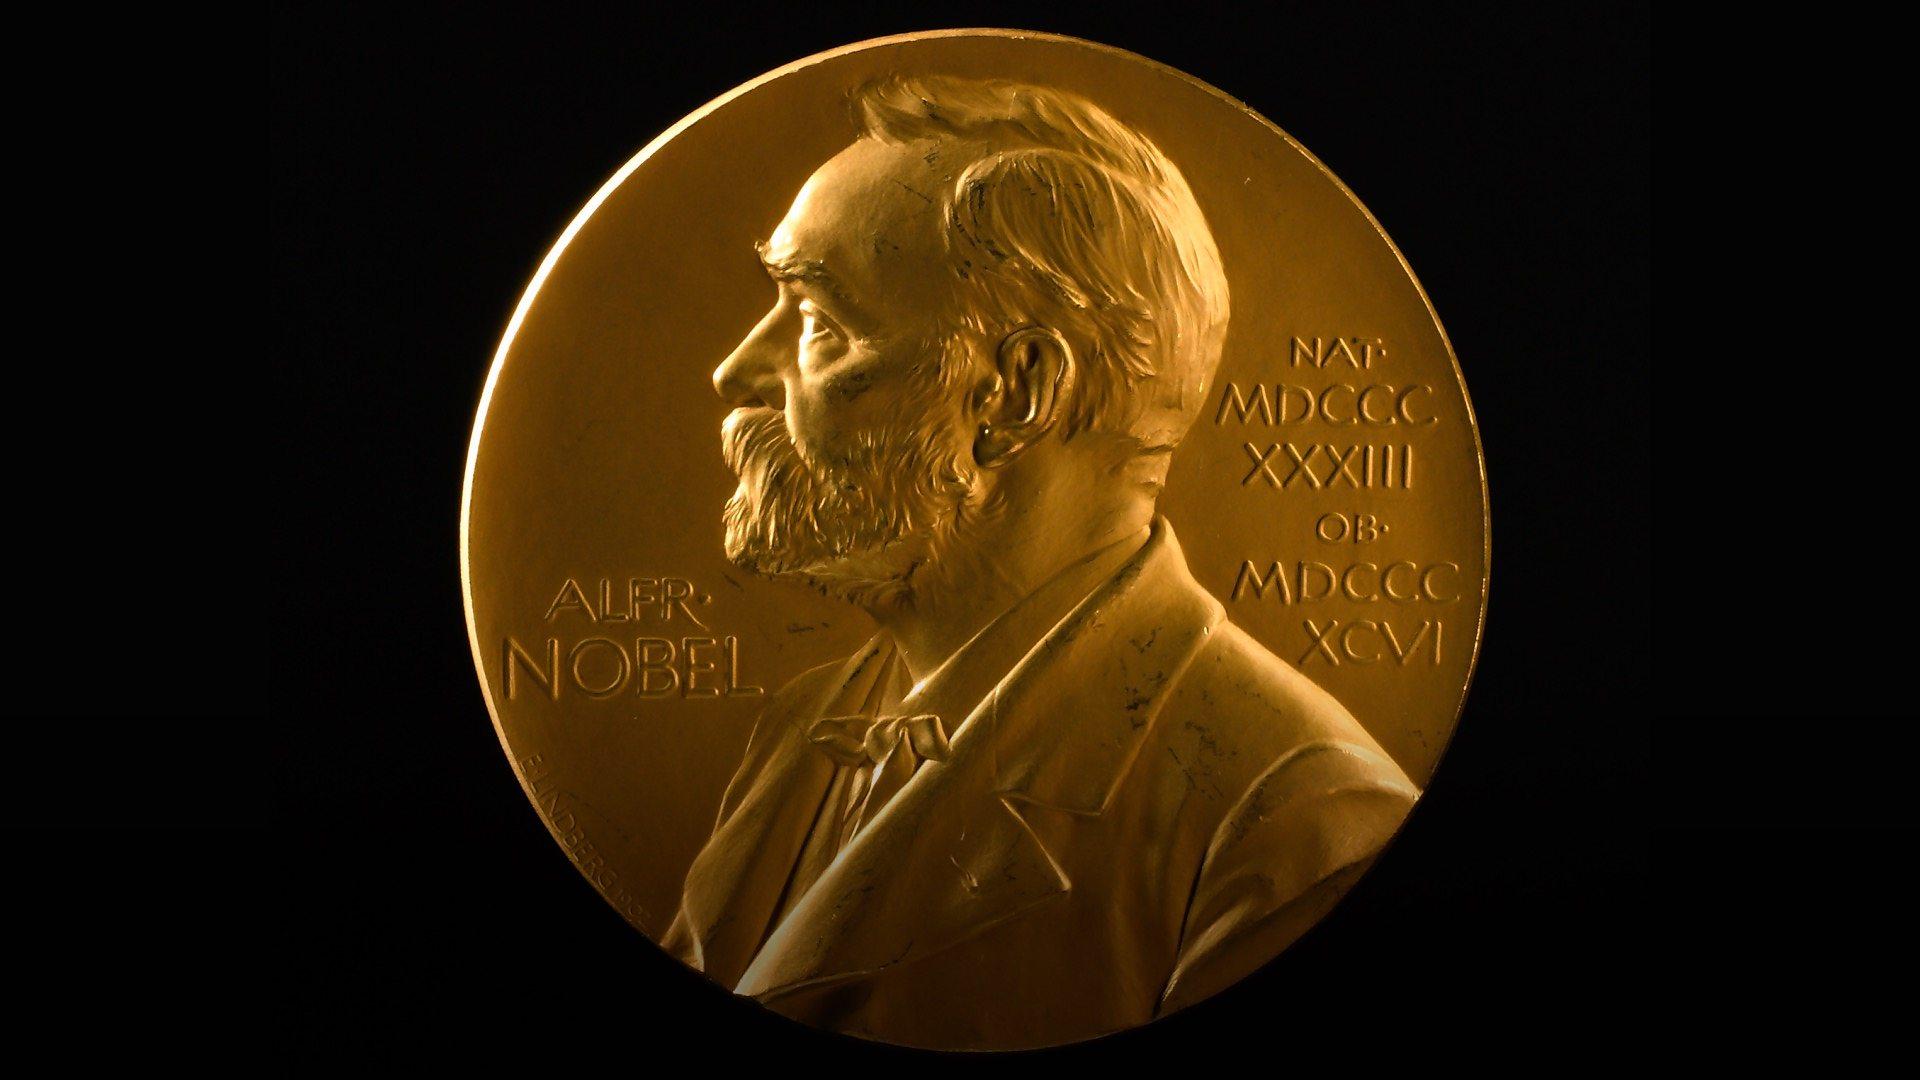 Nobel prize awards. Нобелевская премия Мечникова 1908. Медаль Нобелевской премии по экономике.